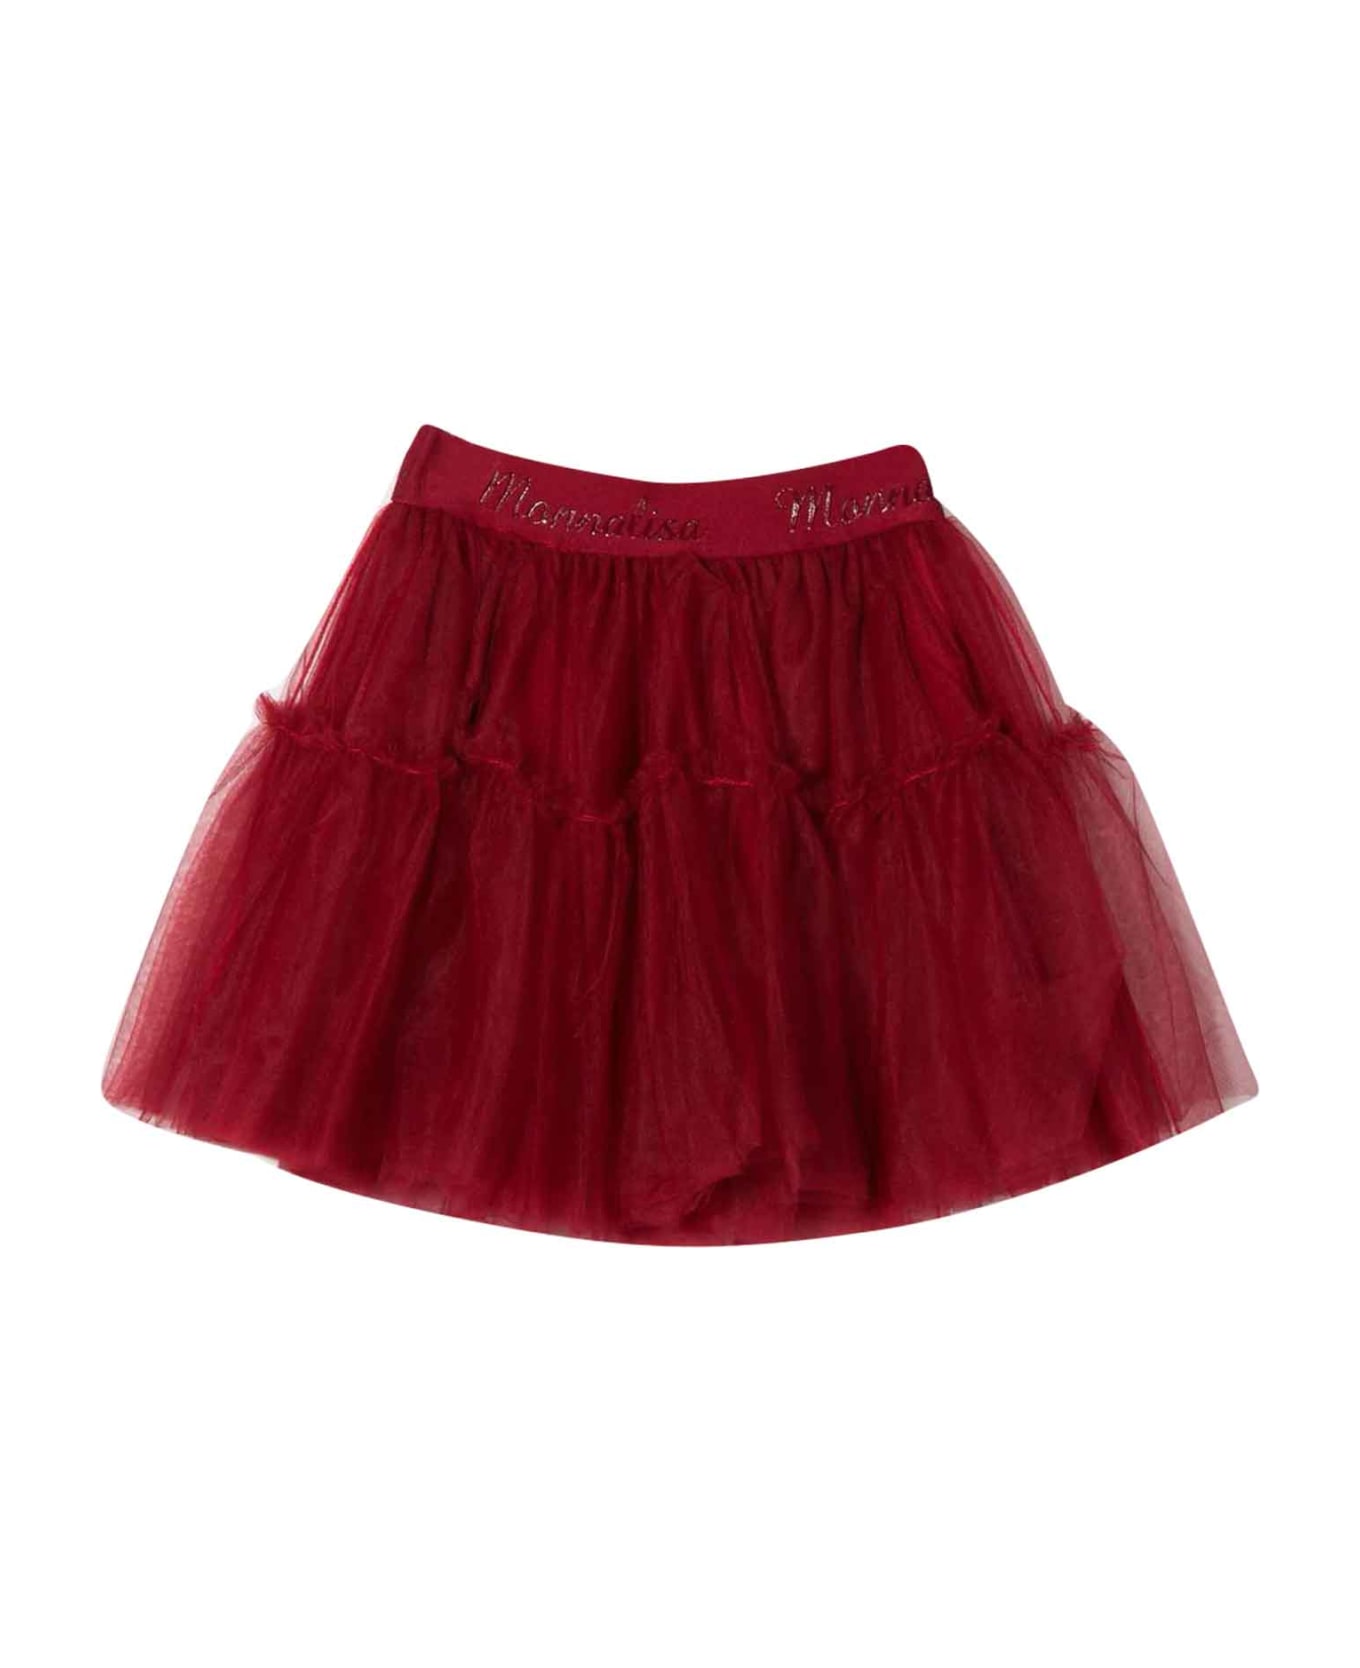 Monnalisa Red Skirt Girl - Rubino